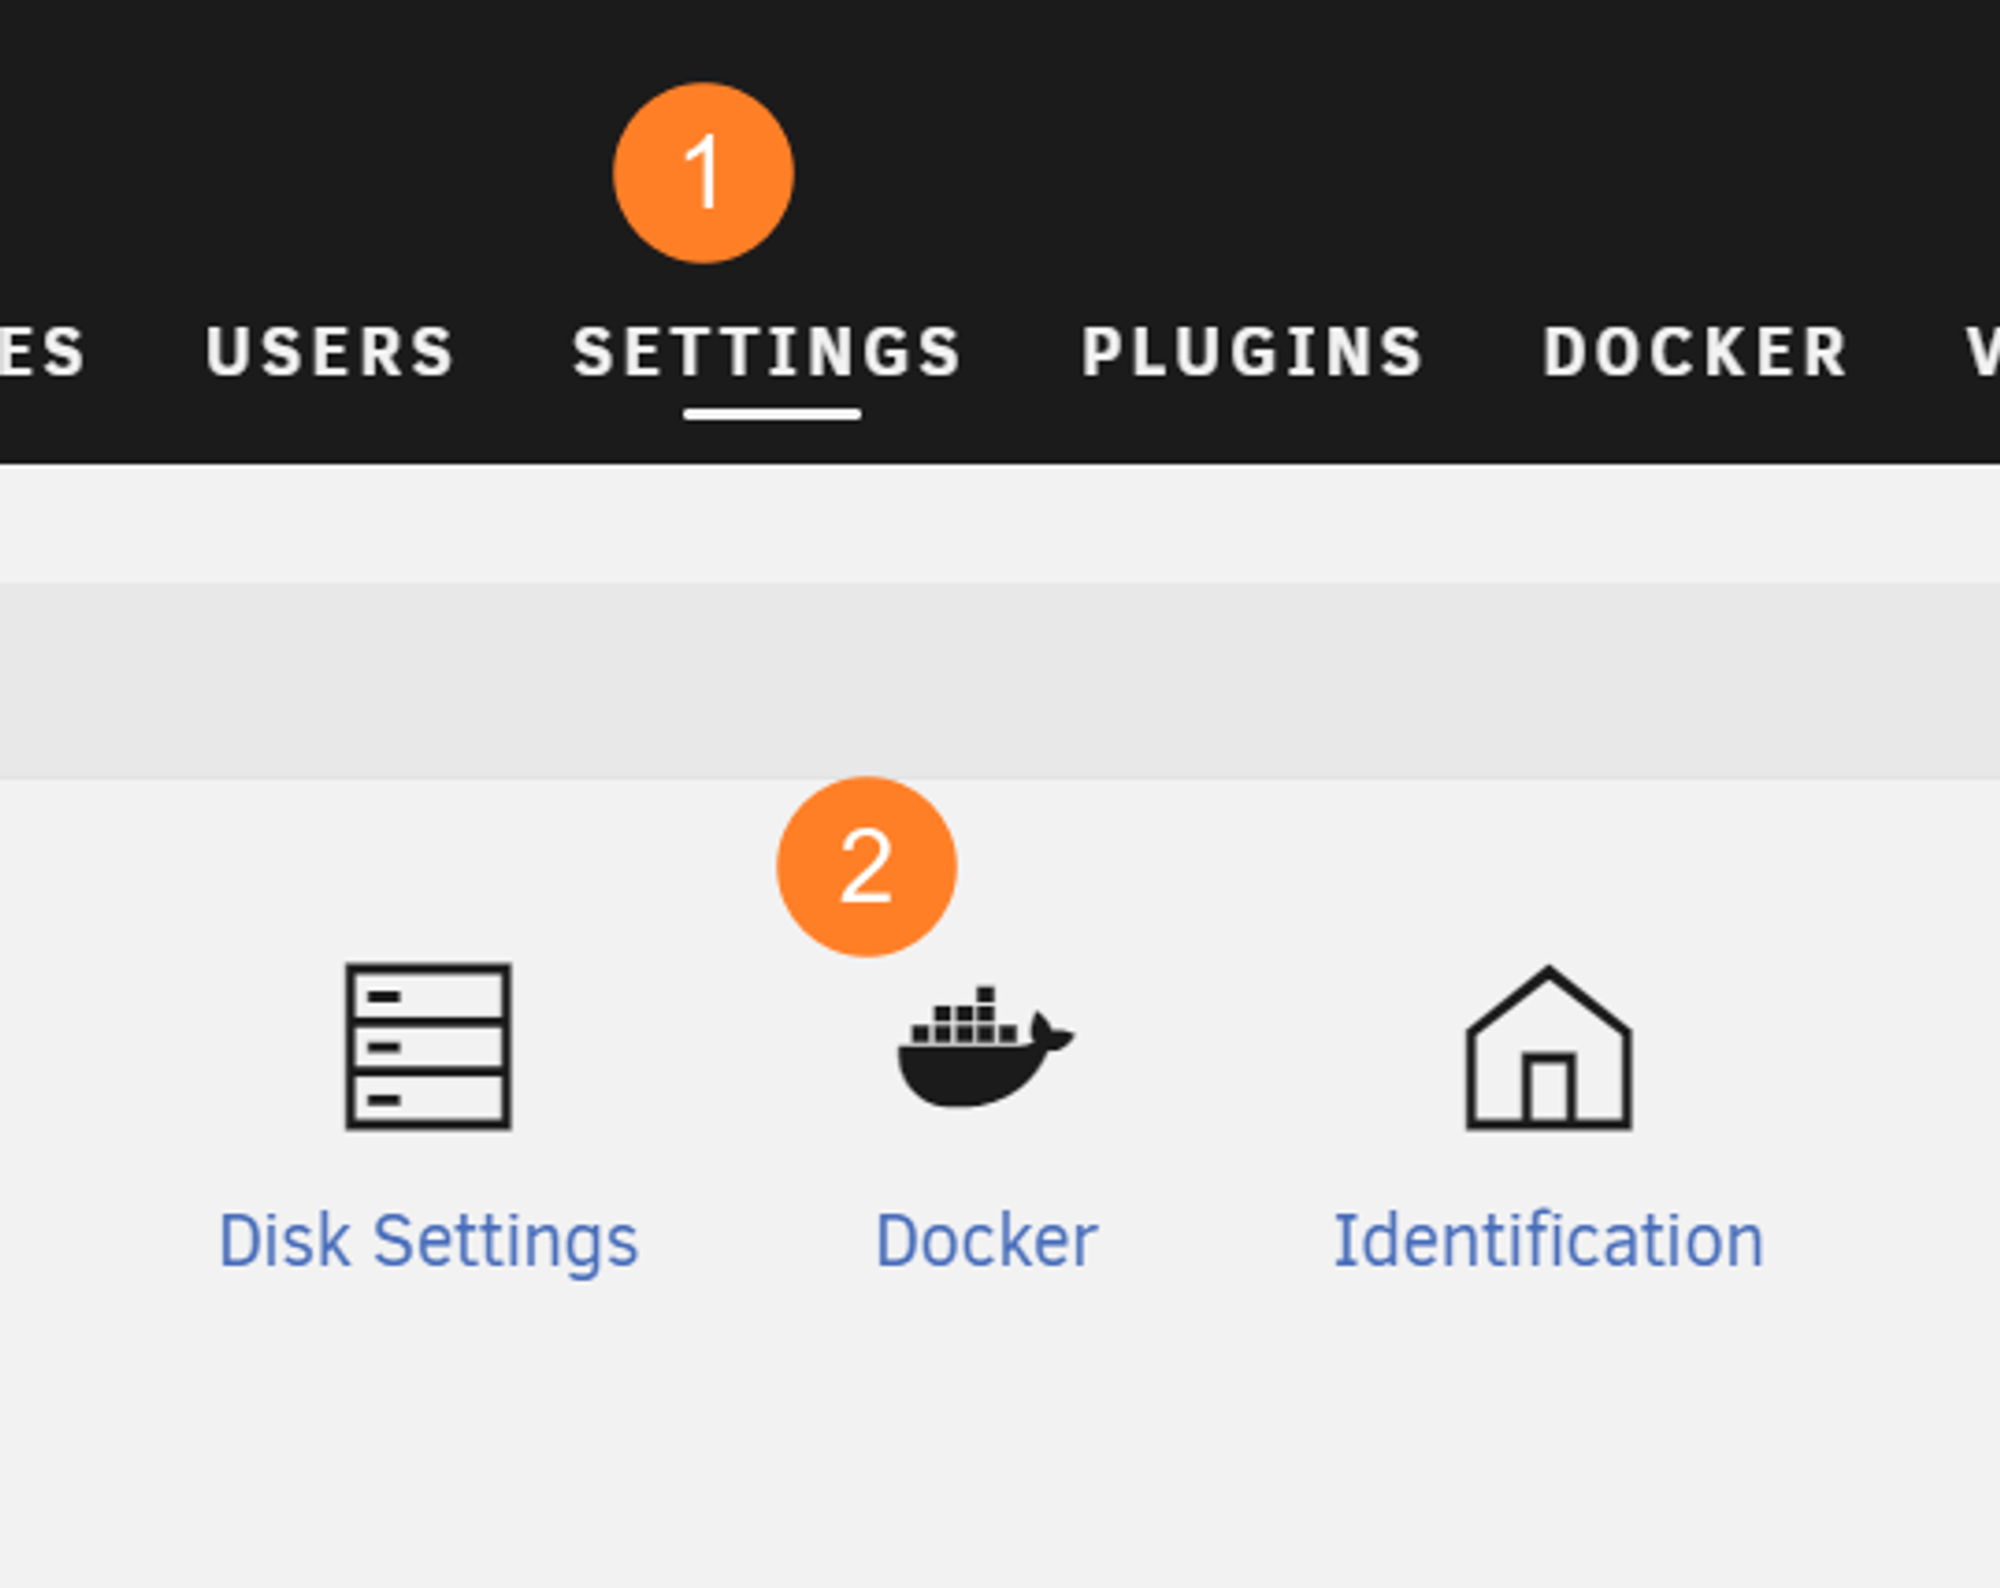 进入 Docker 服务的设置界面